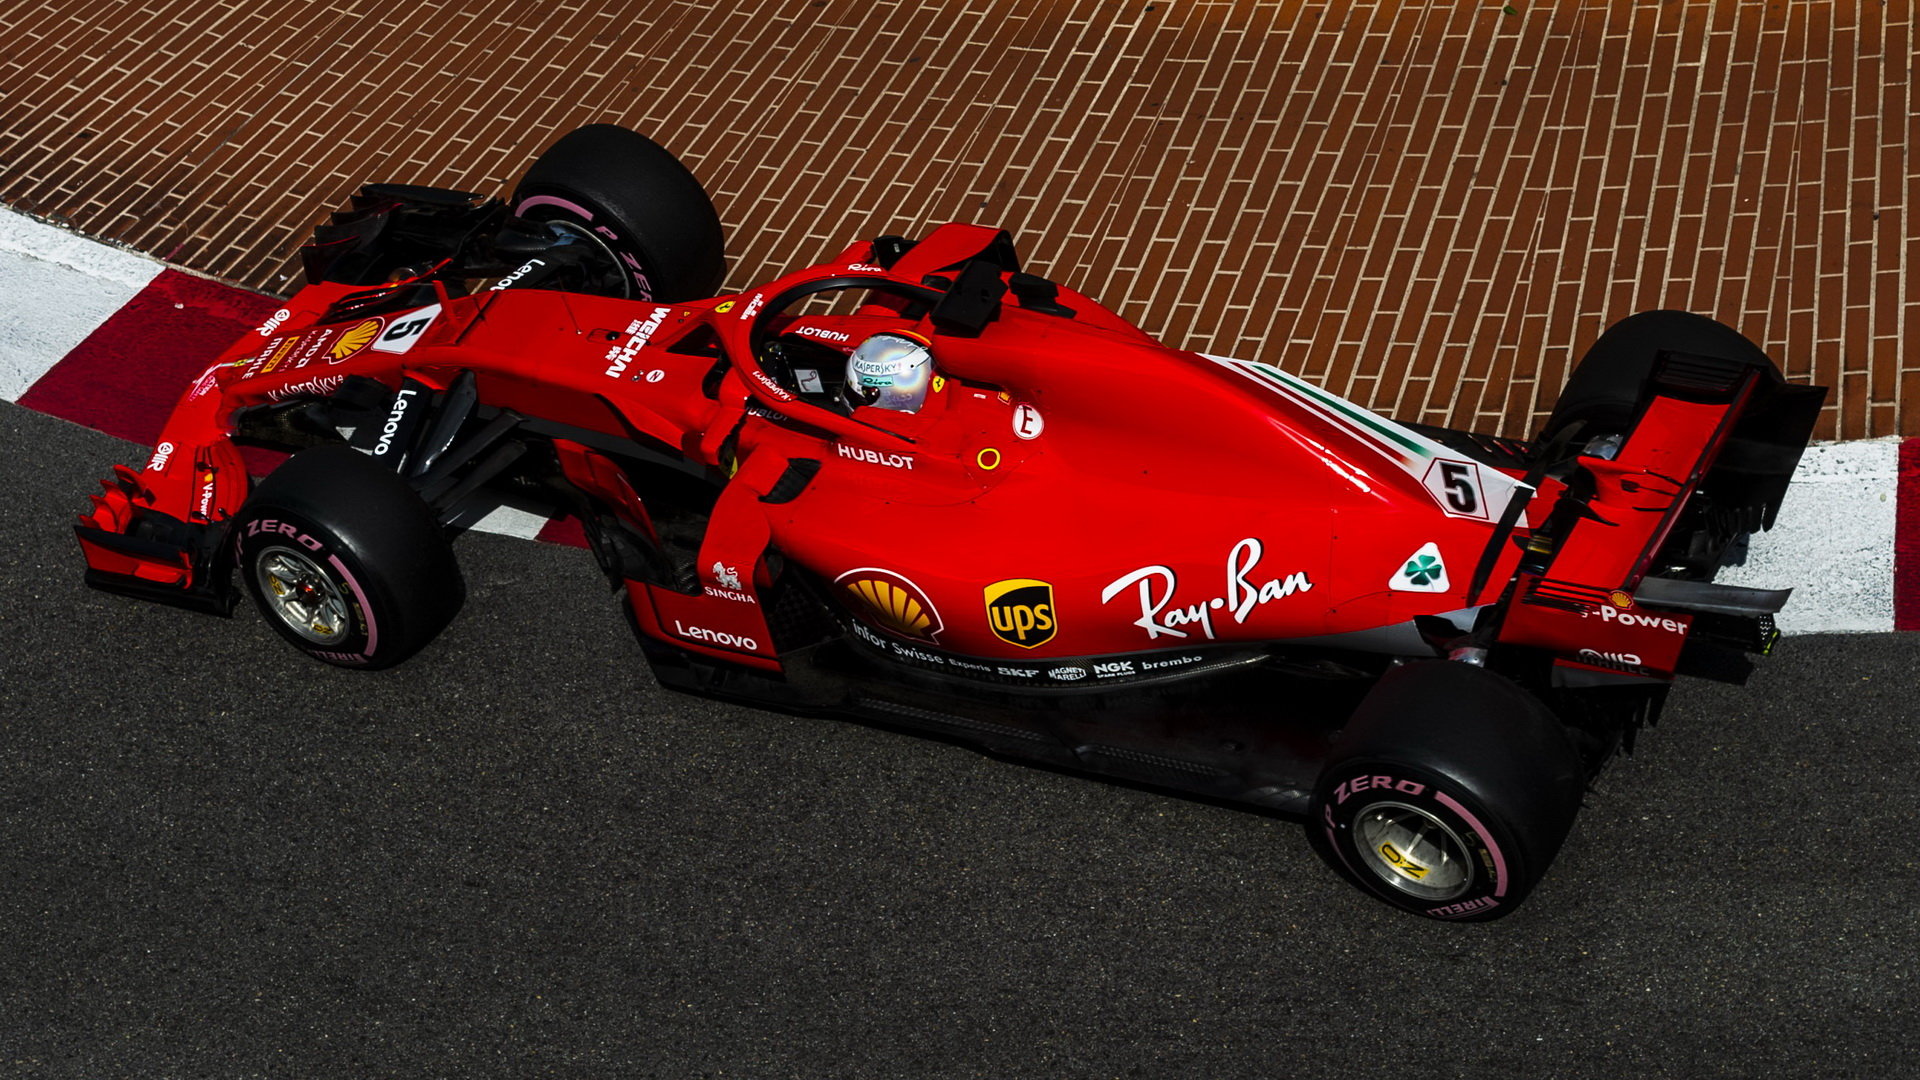 FIA si v tréninku na práci Ferrari s pohonnou jednotkou posvítila, situaci bude dále sledovat